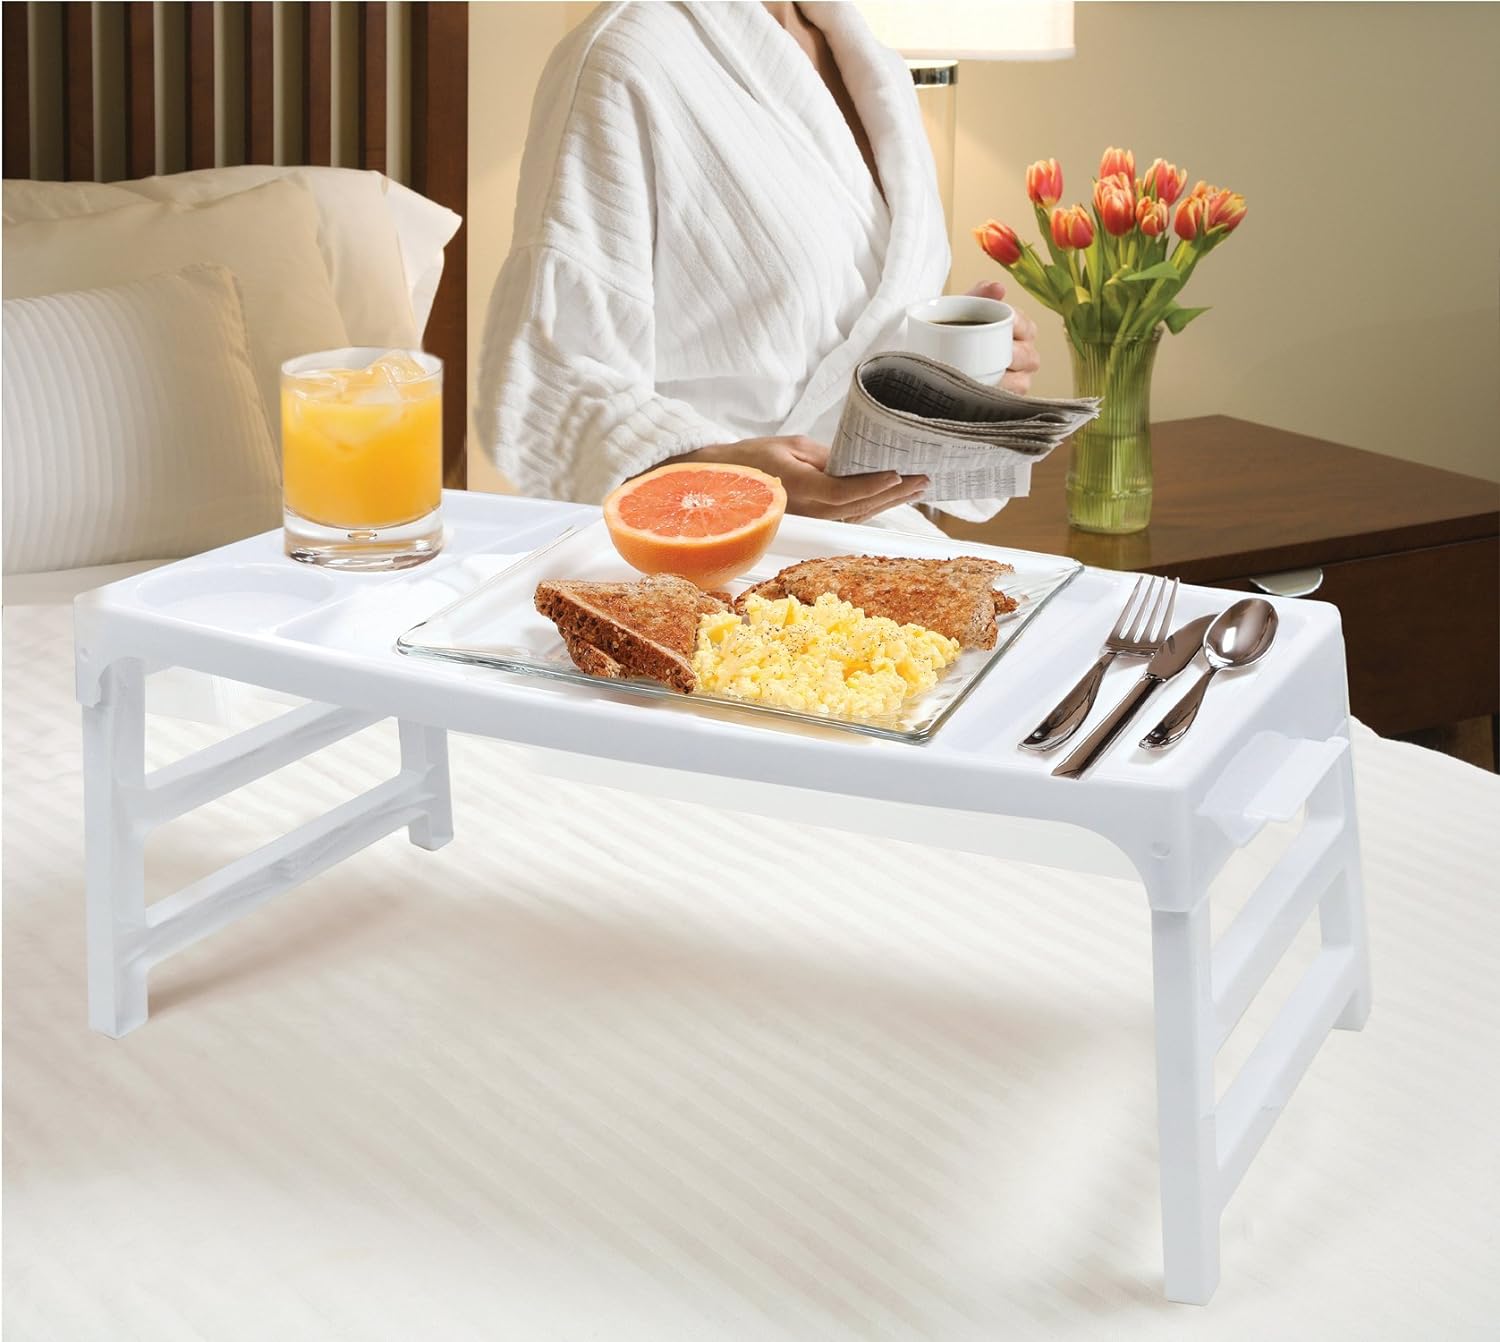 Кроватный столик для завтрака в постель: удобно и практично.